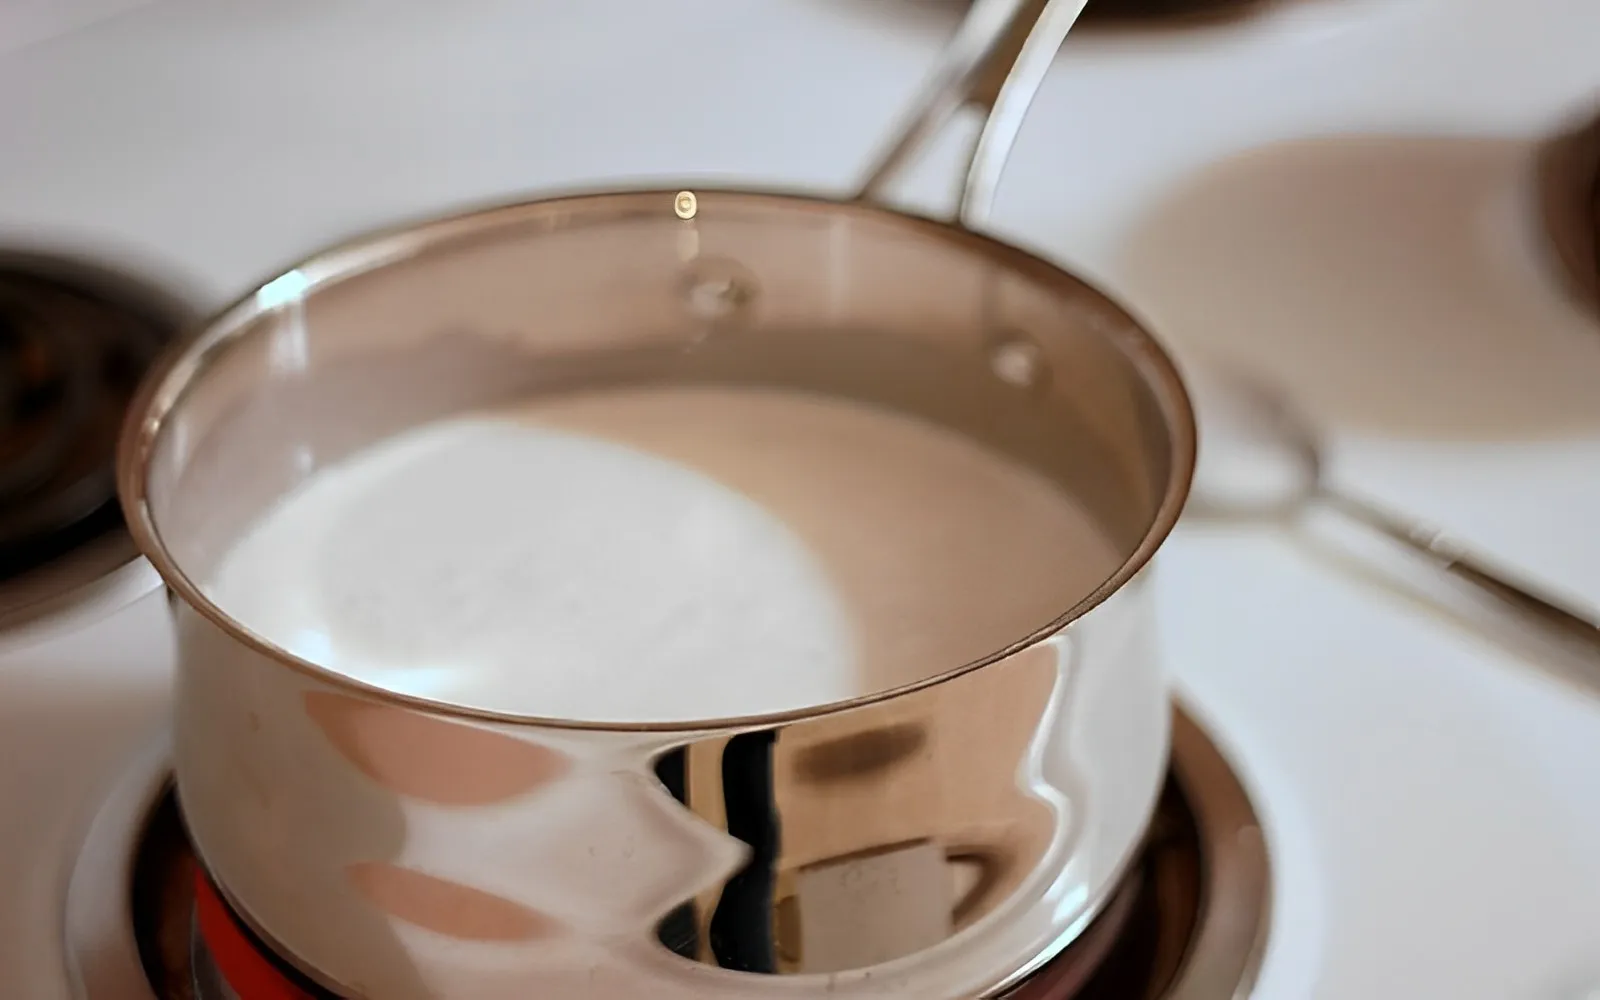 5 Cách làm kem dừa ngon, mát lạnh, đơn giản tại nhà